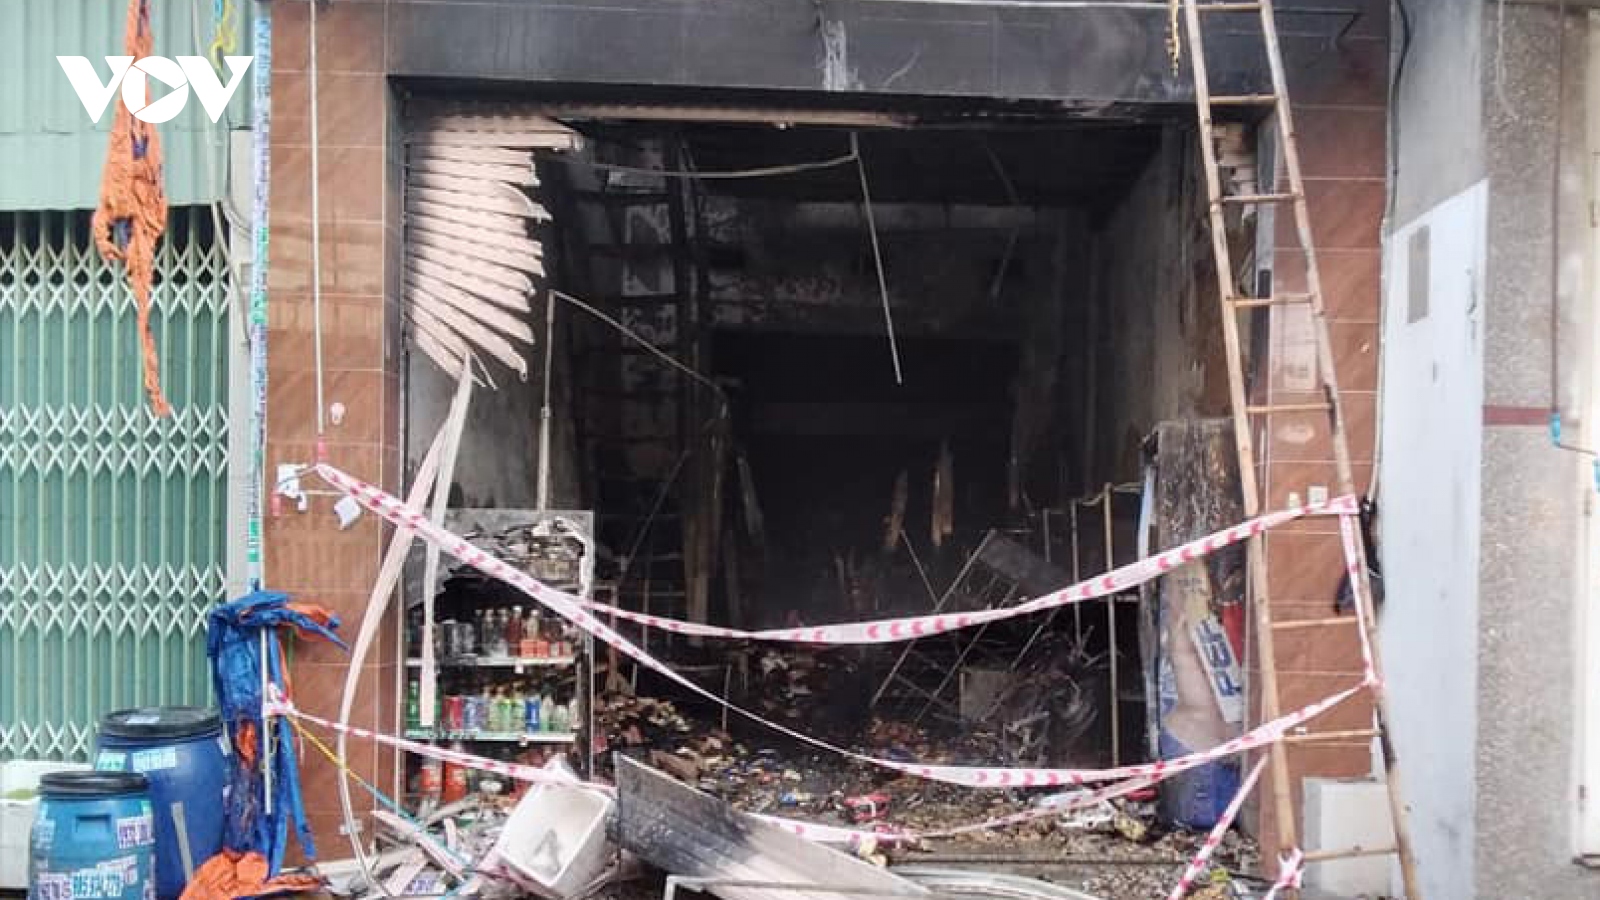 Đã có 5 nguời chết trong vụ cháy cửa hàng tạp hóa ở Bình Dương